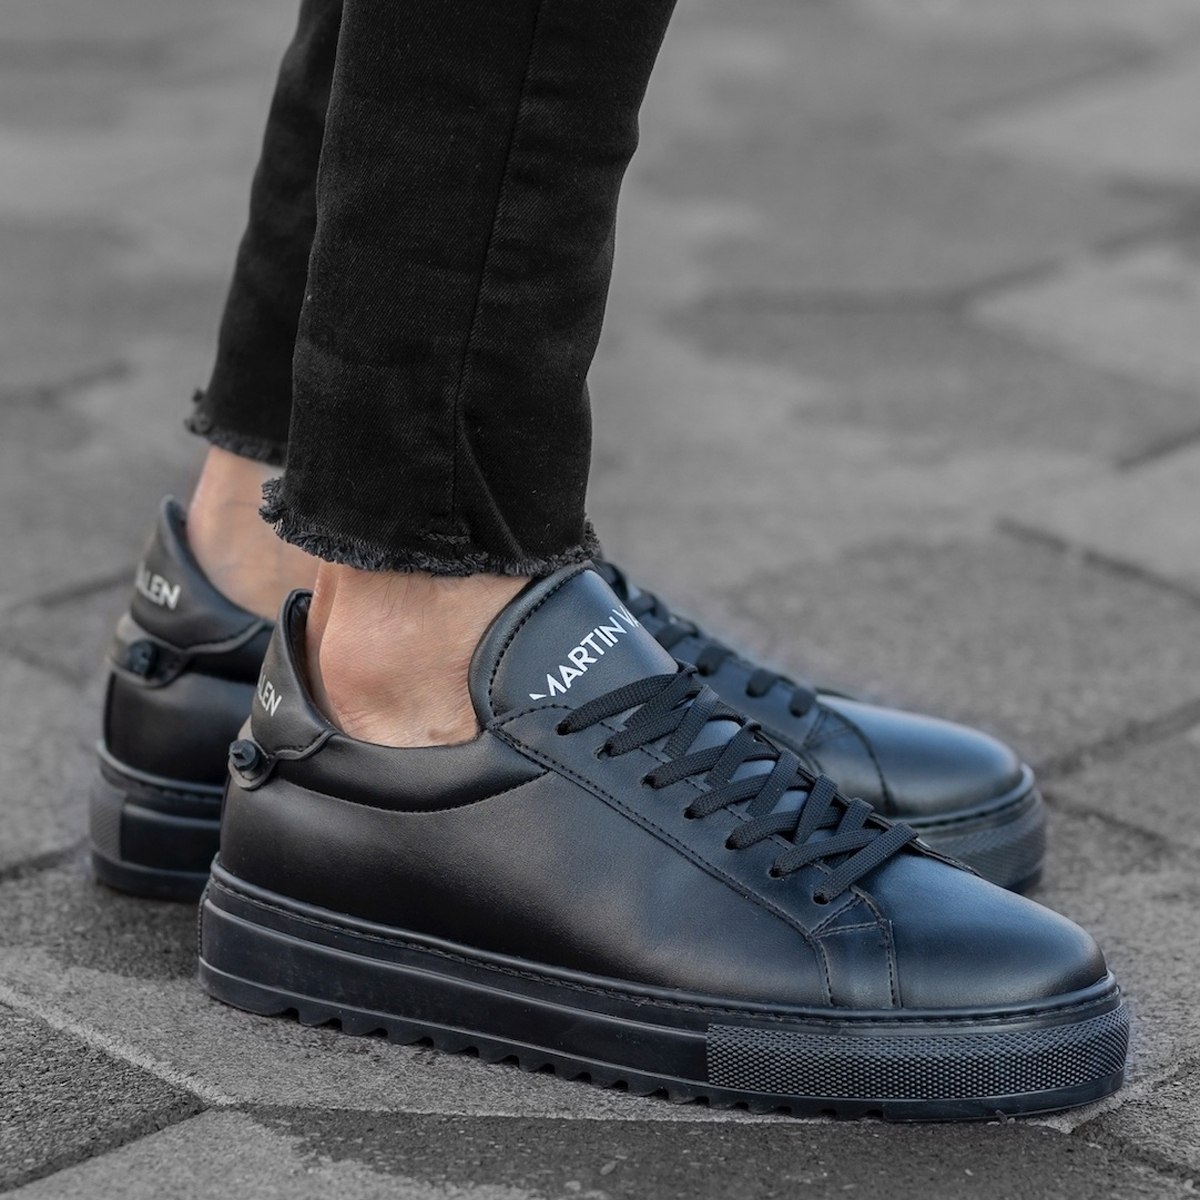 Herren Low Top Sneakers Schuhe in schwarz - 1